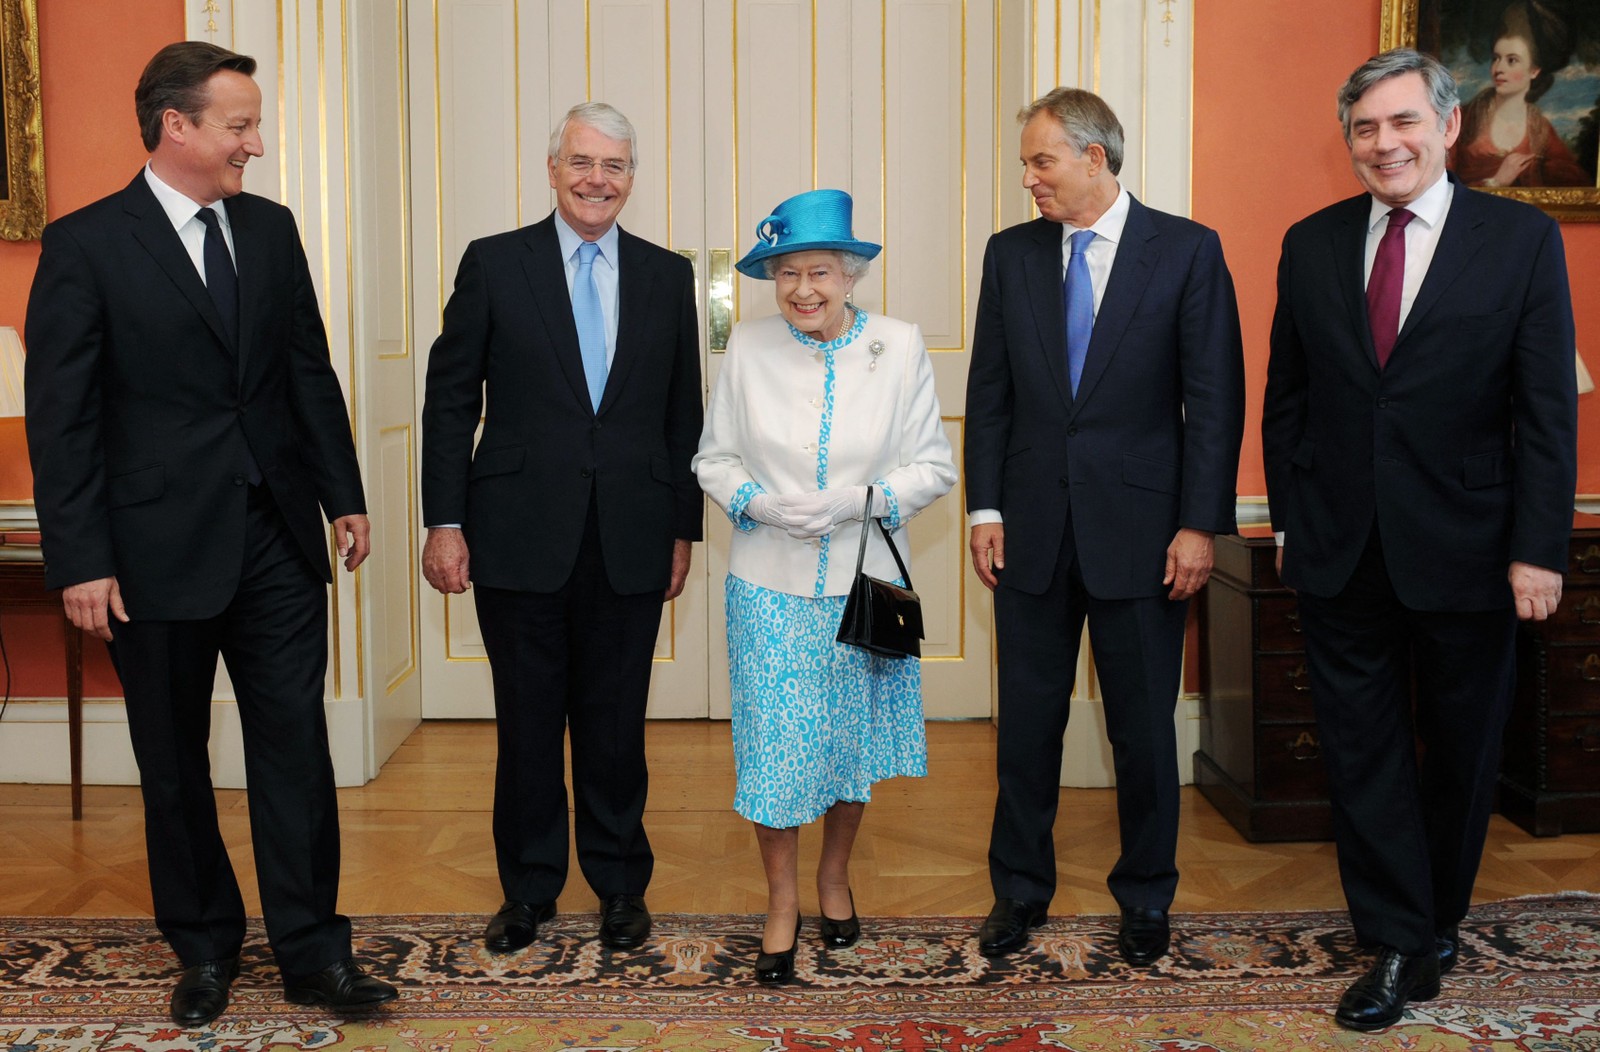 Elizabeth II posa com  o primeiro-ministro britânico David Cameron e os ex-primeiros-ministros John Major, Tony Blair e Gordon Brown para uma fotografia antes do Jubileu de Diamante, em 2012 — Foto: Stefan Rousseau/AFP